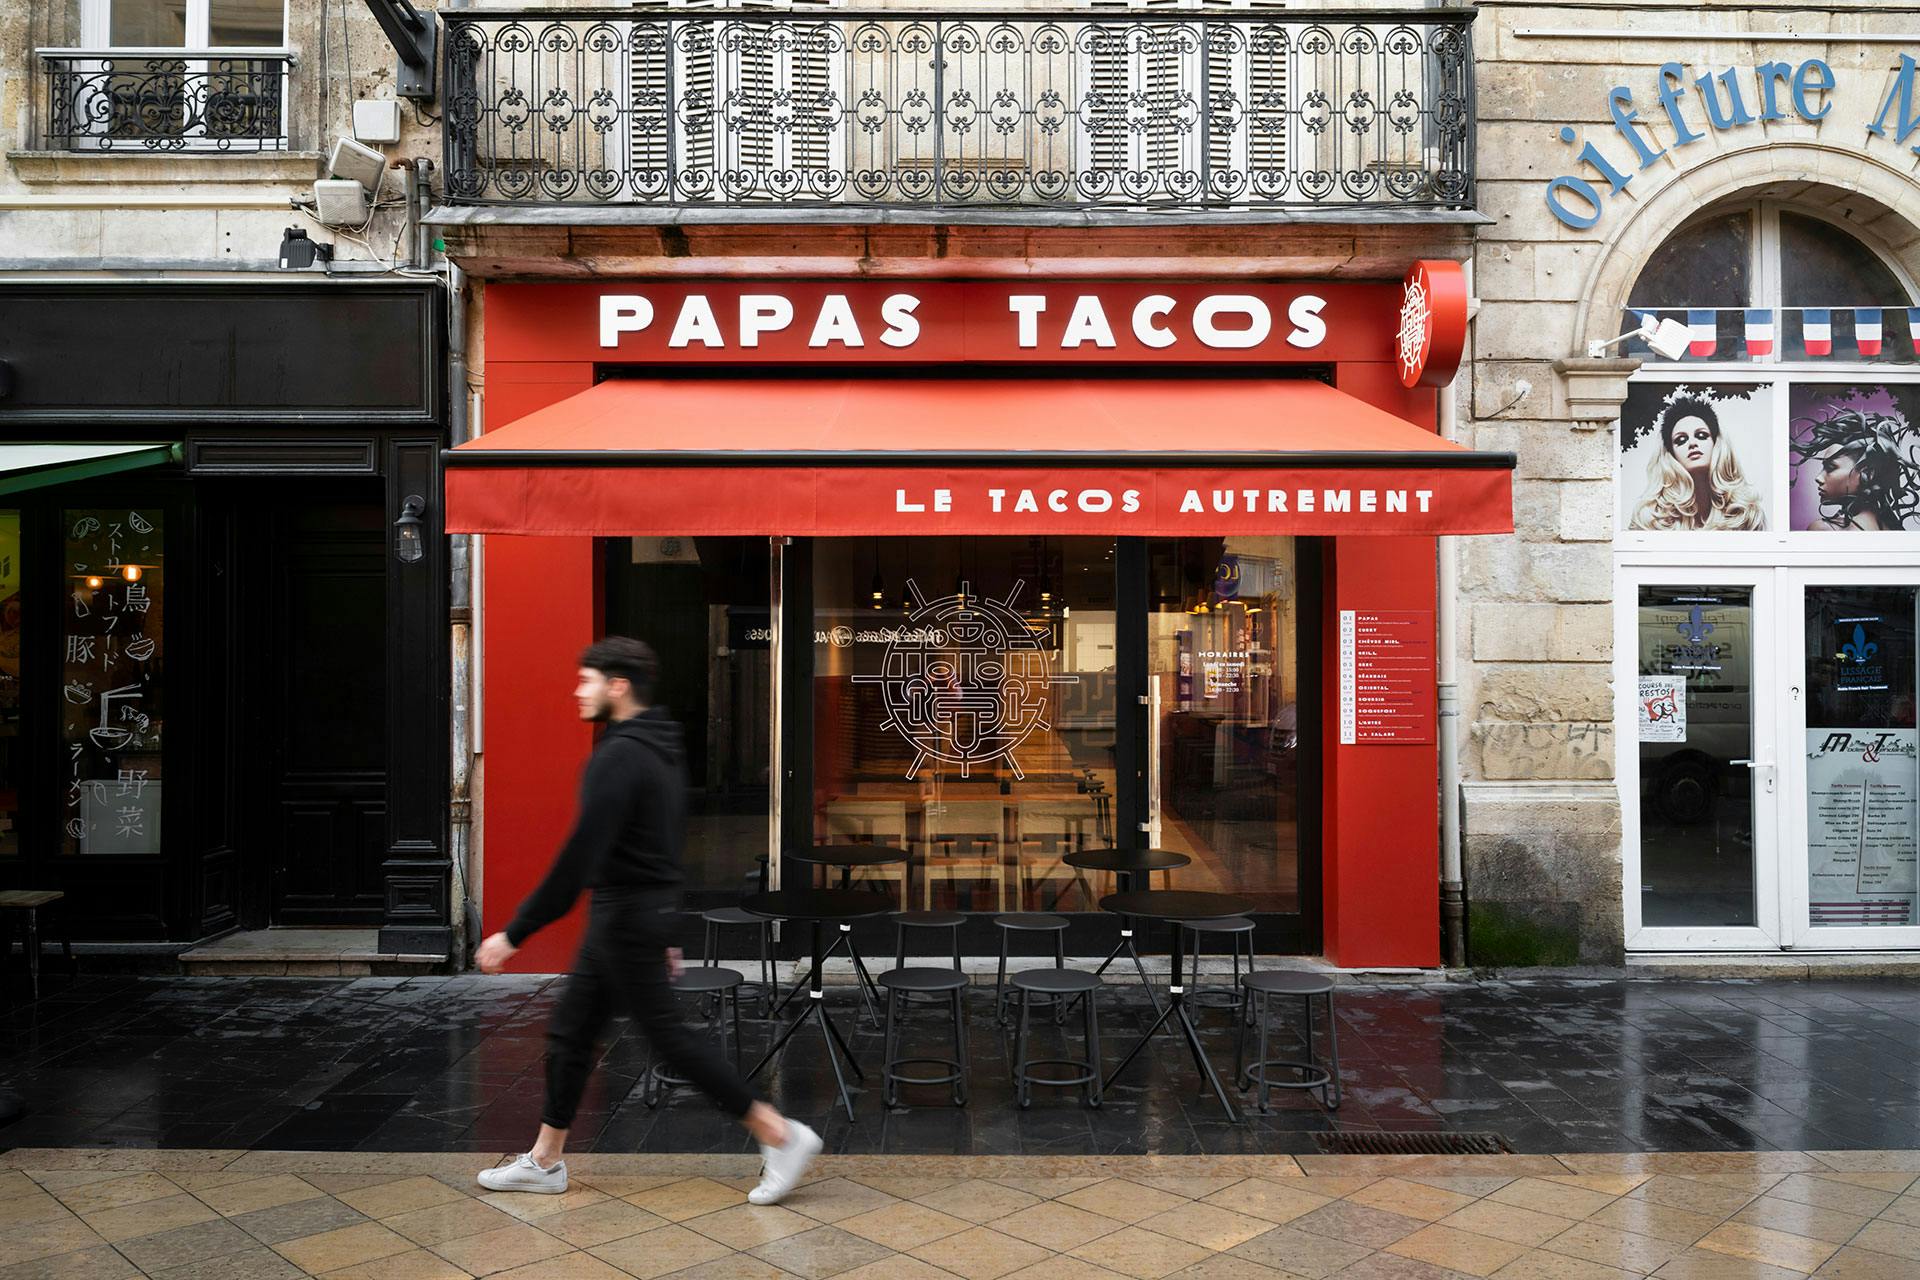 Papas TAcos - restaurant - architecture - Bordeaux - identity - facade - blind - valance - neon sign